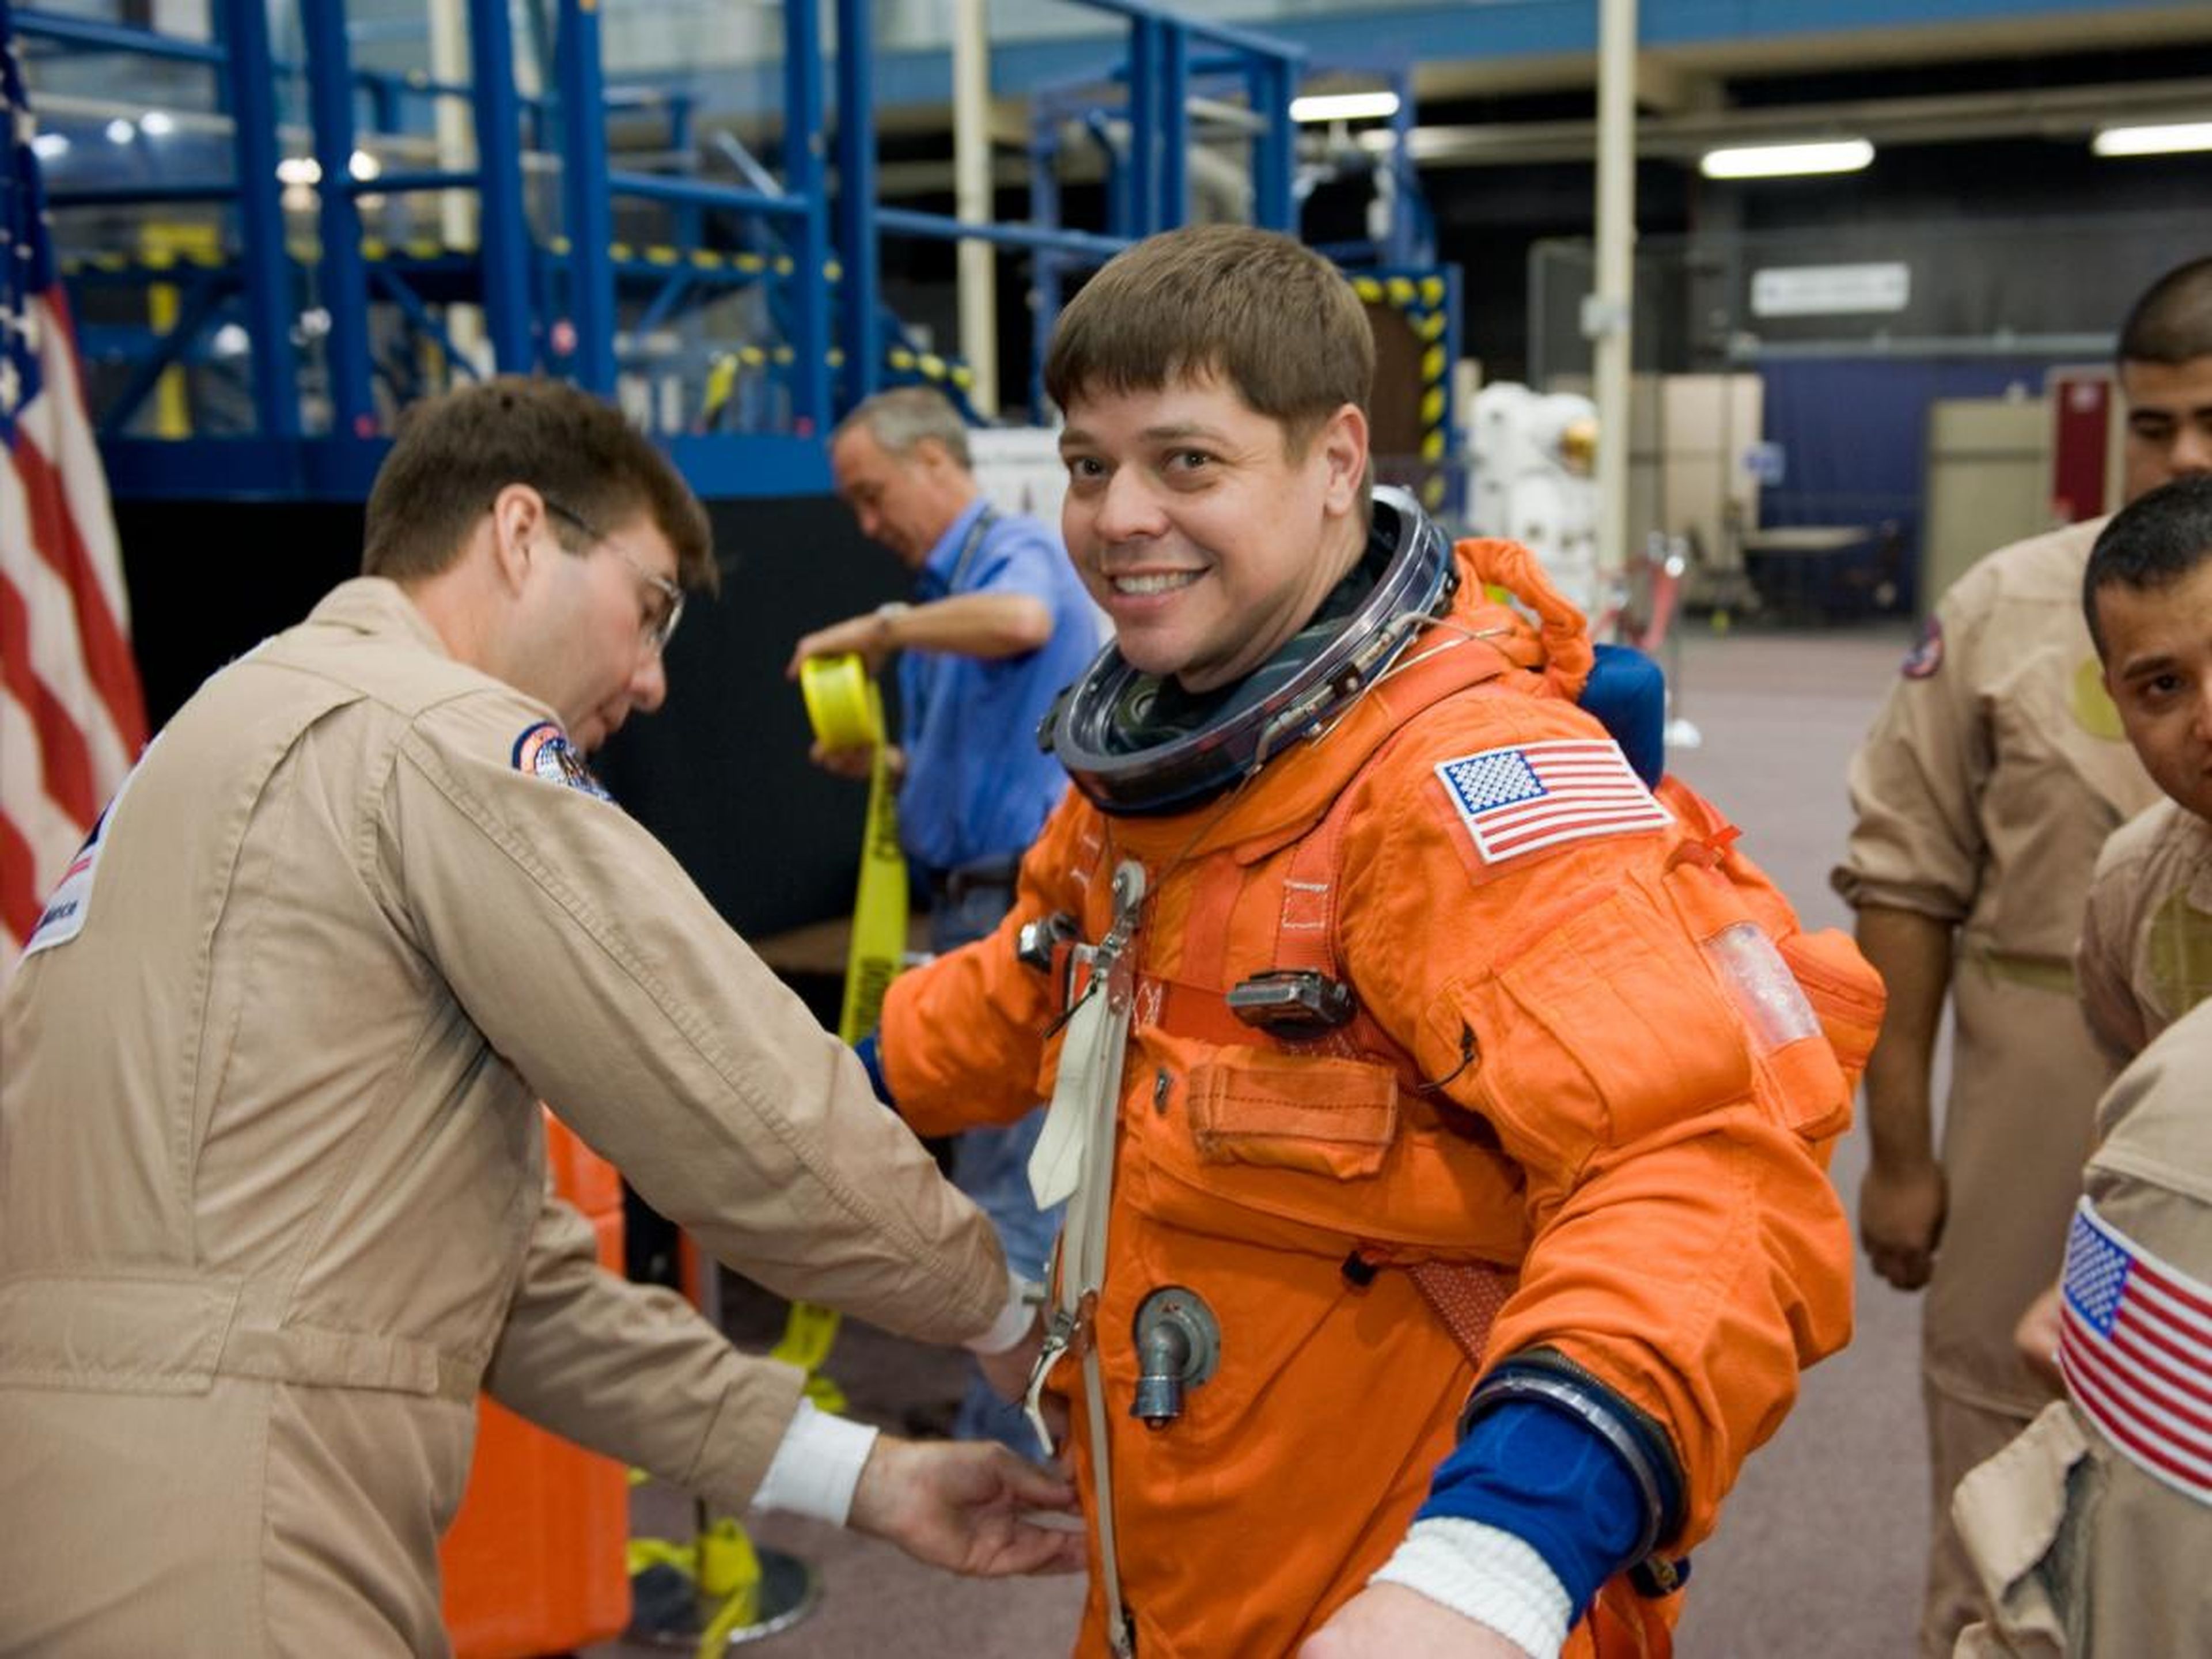 Behnken equipado con un traje similar al de entrenamiento y entrada al Centro Espacial Johnson de la NASA.